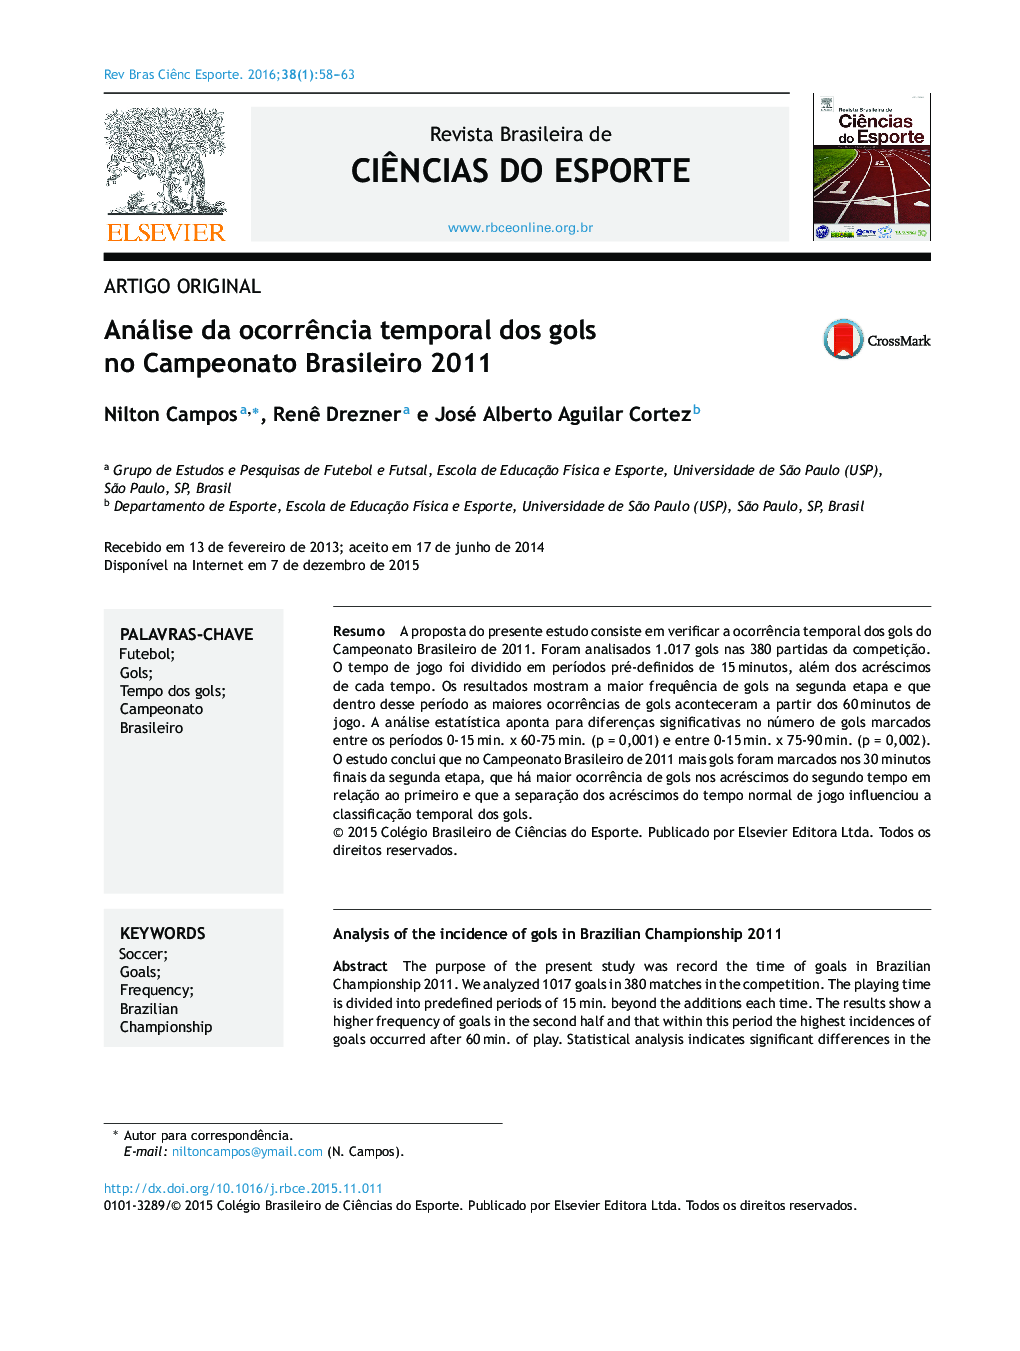 Análise da ocorrência temporal dos gols no Campeonato Brasileiro 2011